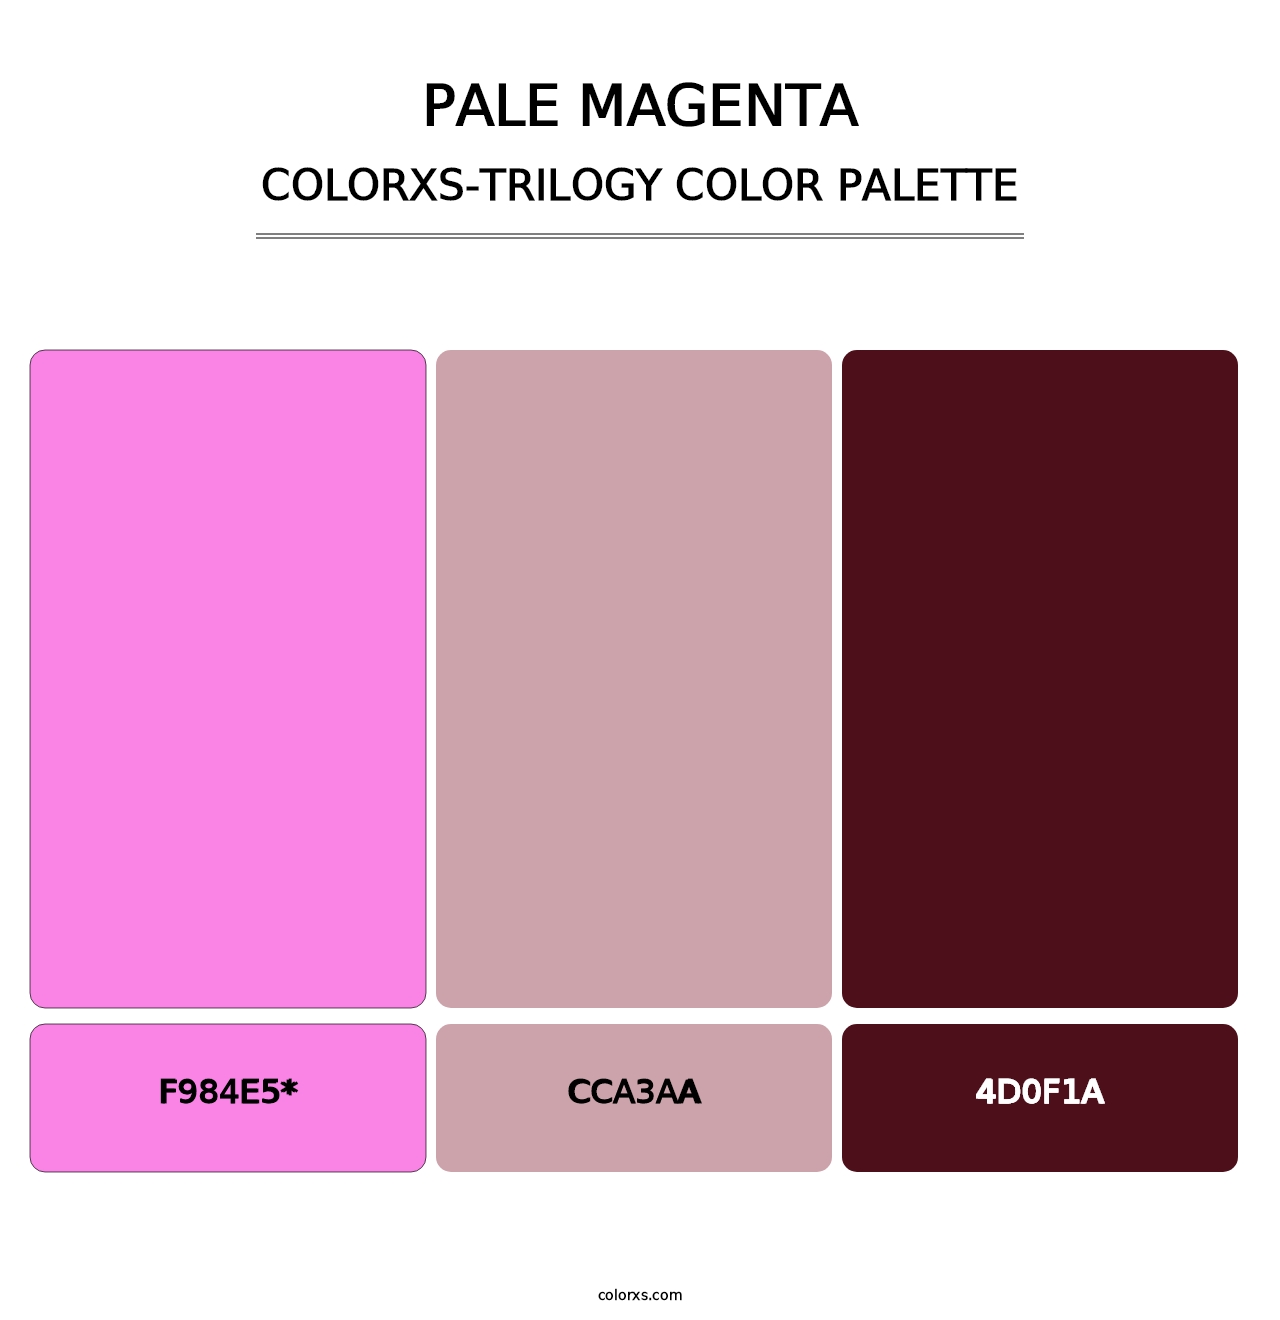 Pale Magenta - Colorxs Trilogy Palette